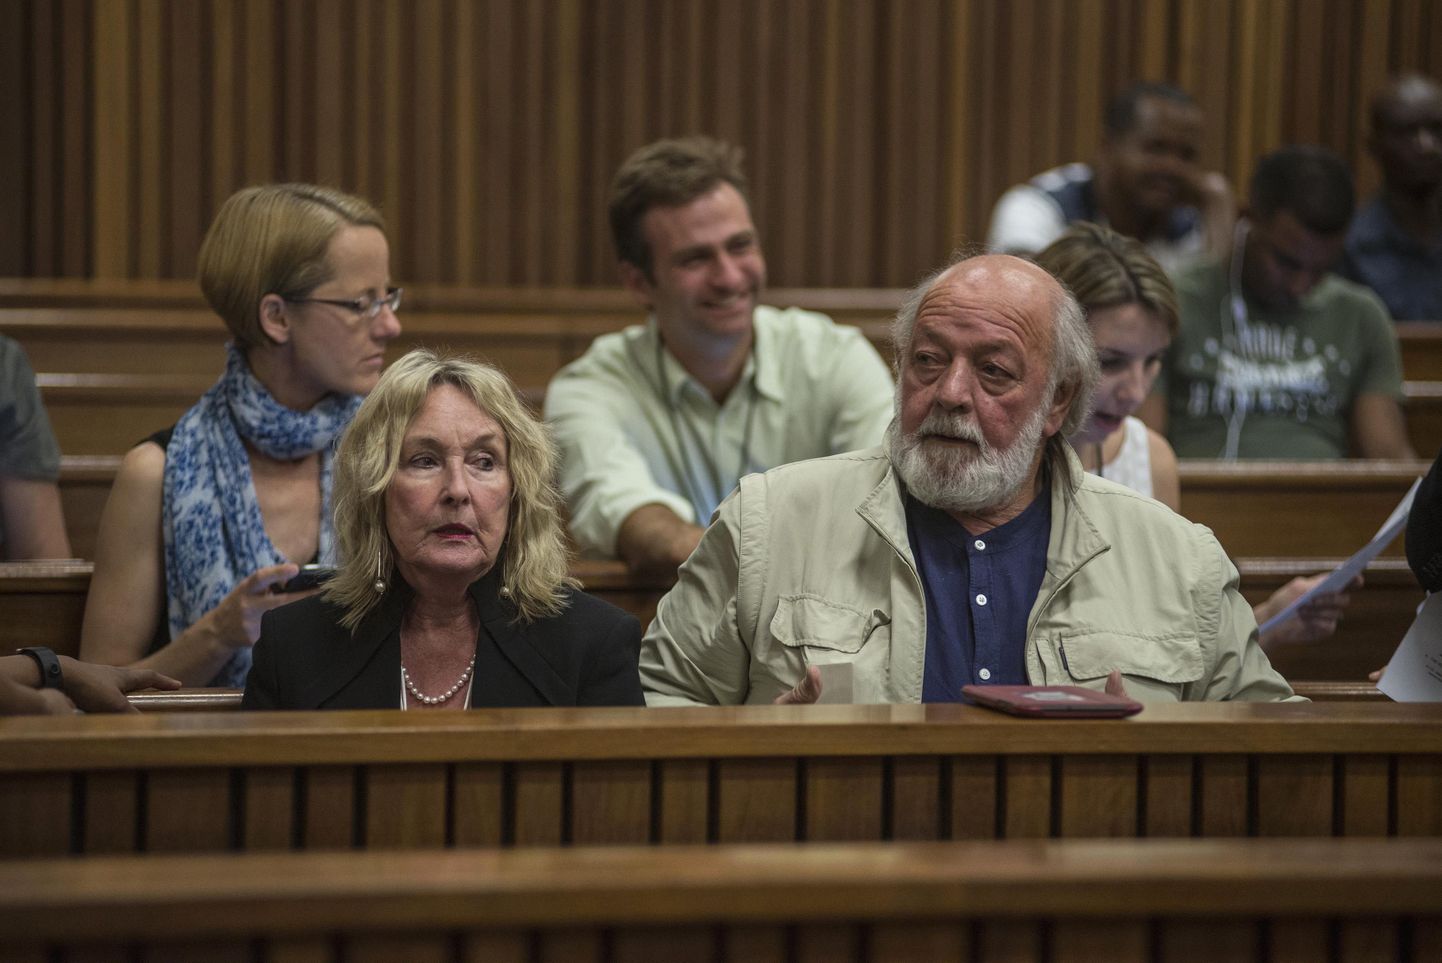 Reeva Steenkampi vanemad ehk ema June ja isa Barry Steenkamp.